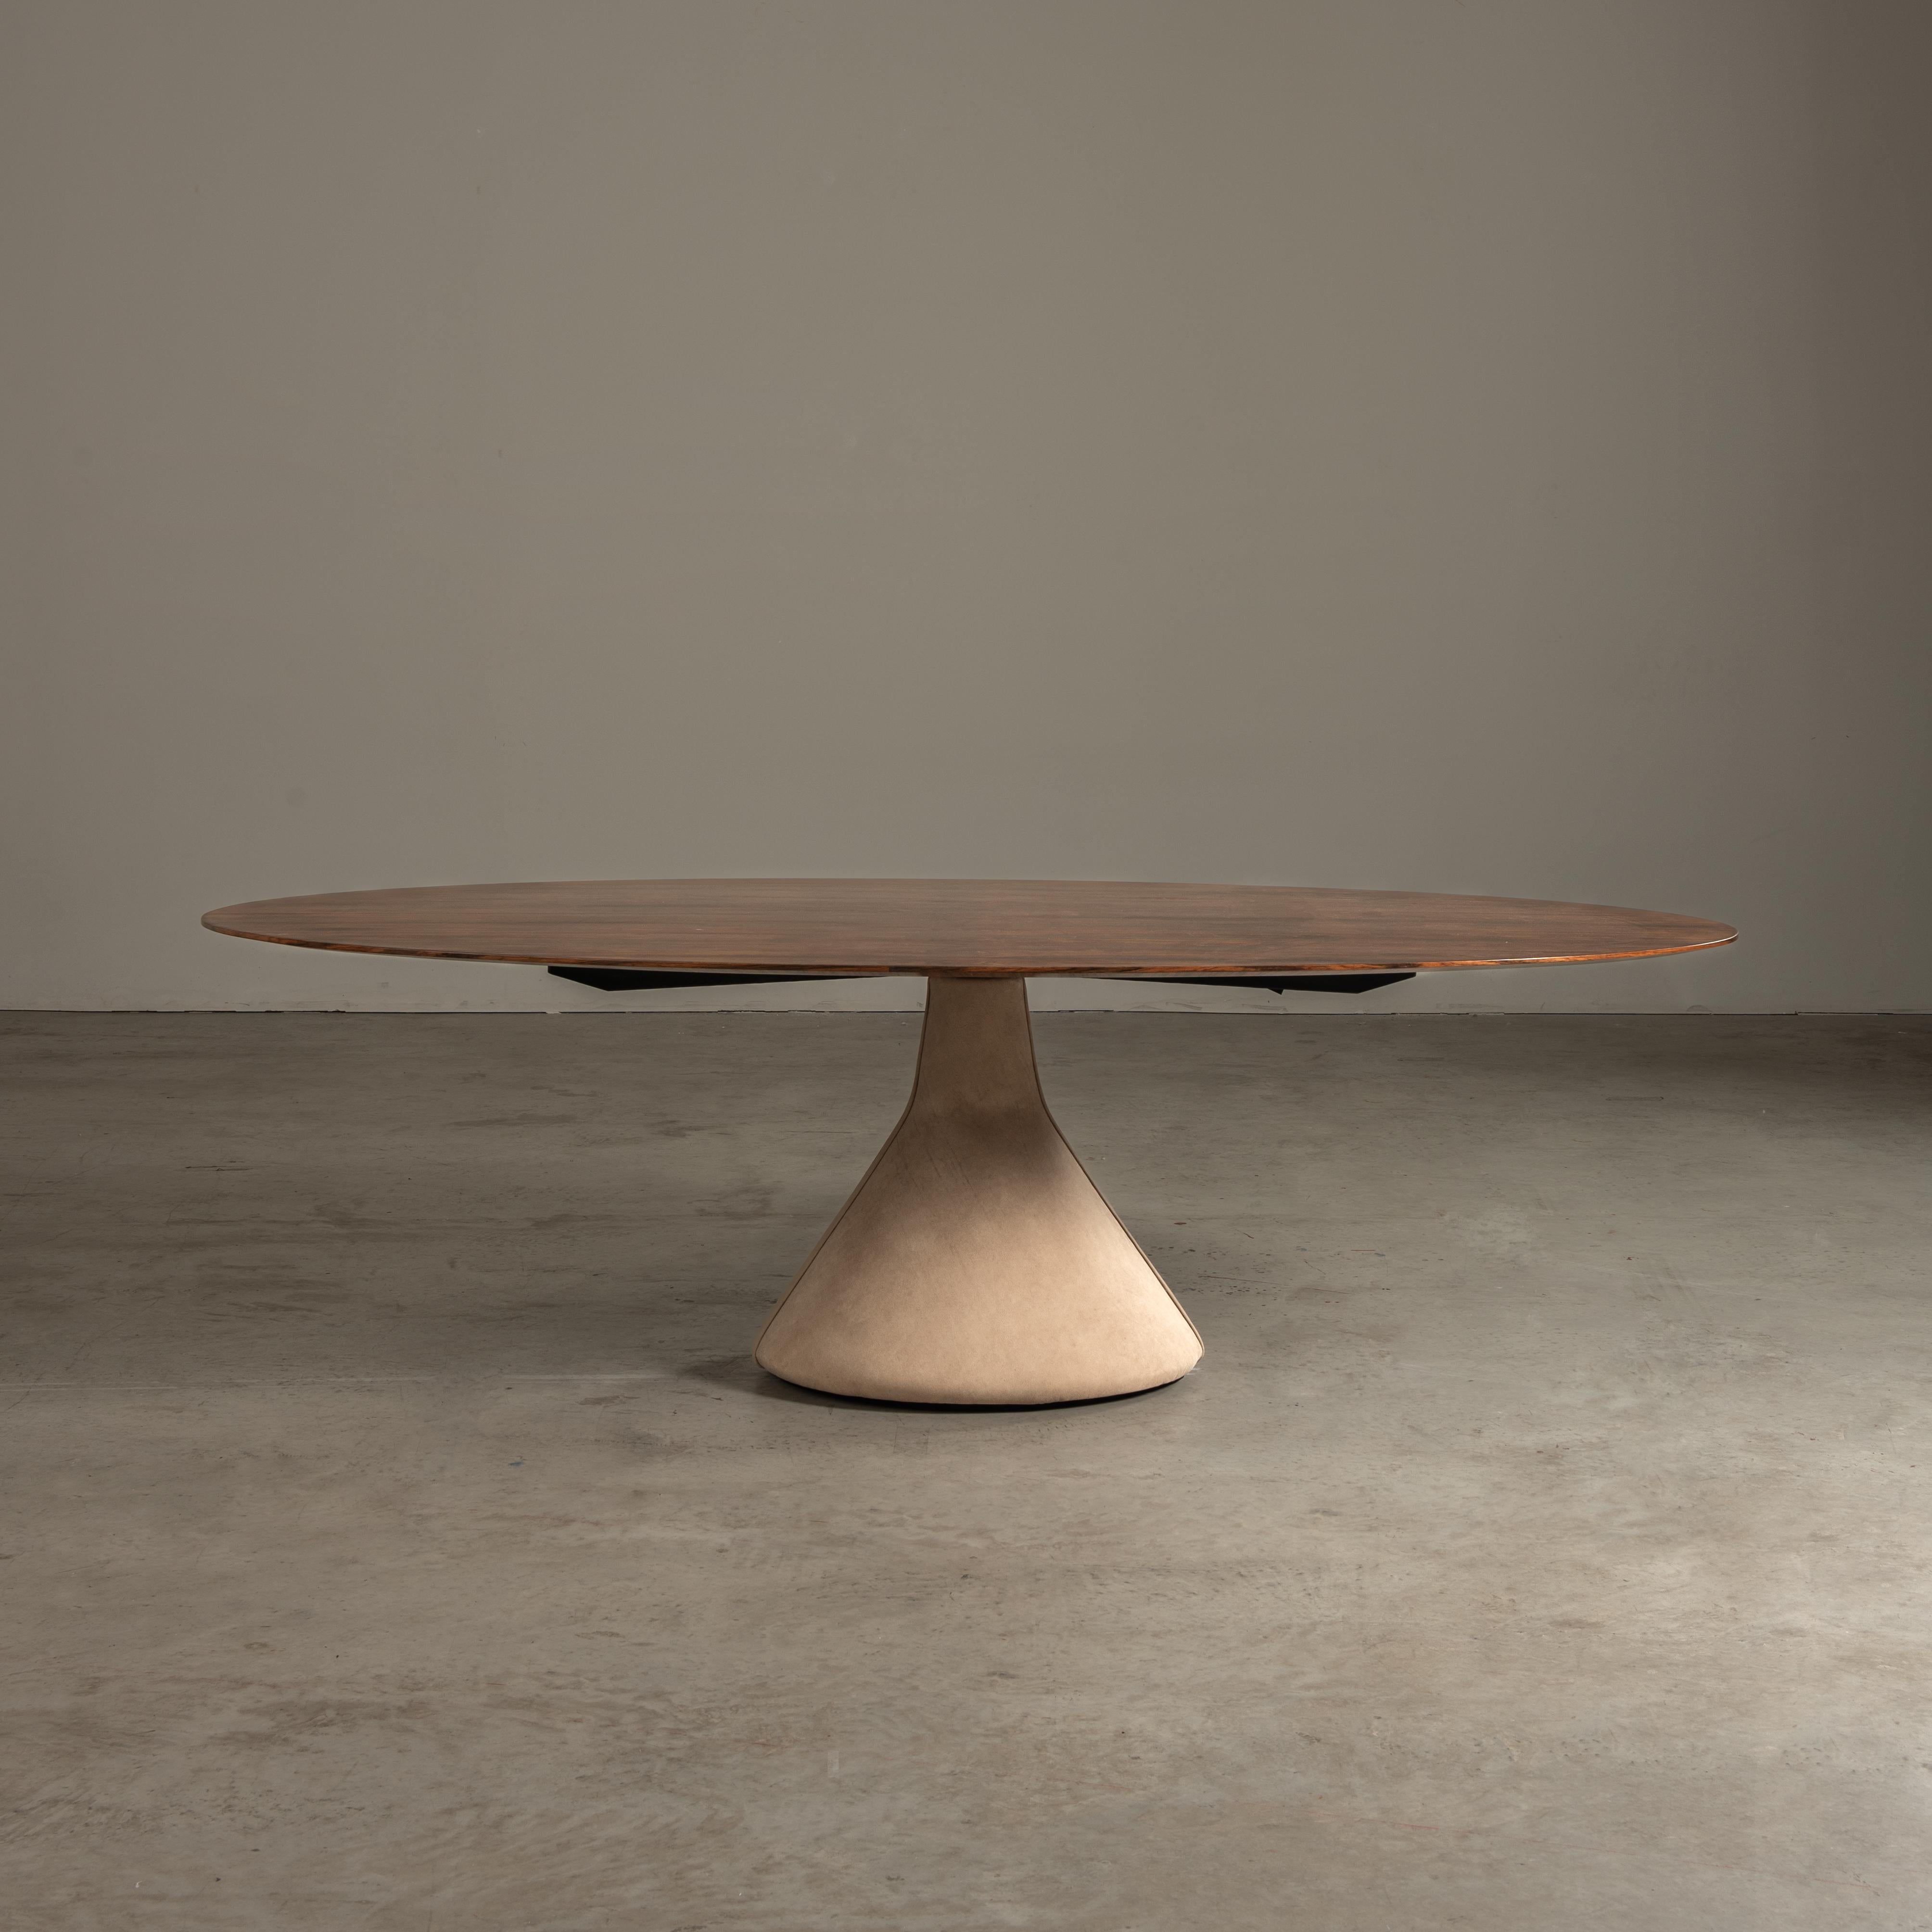 La table à manger Guanabara, présentée ici dans sa version ovale, très rare, est un magnifique exemple de l'éthique du design de Jorge Zalszupin, mêlant la chaleur du bois à la sophistication du cuir dans une union sans faille qui évoque